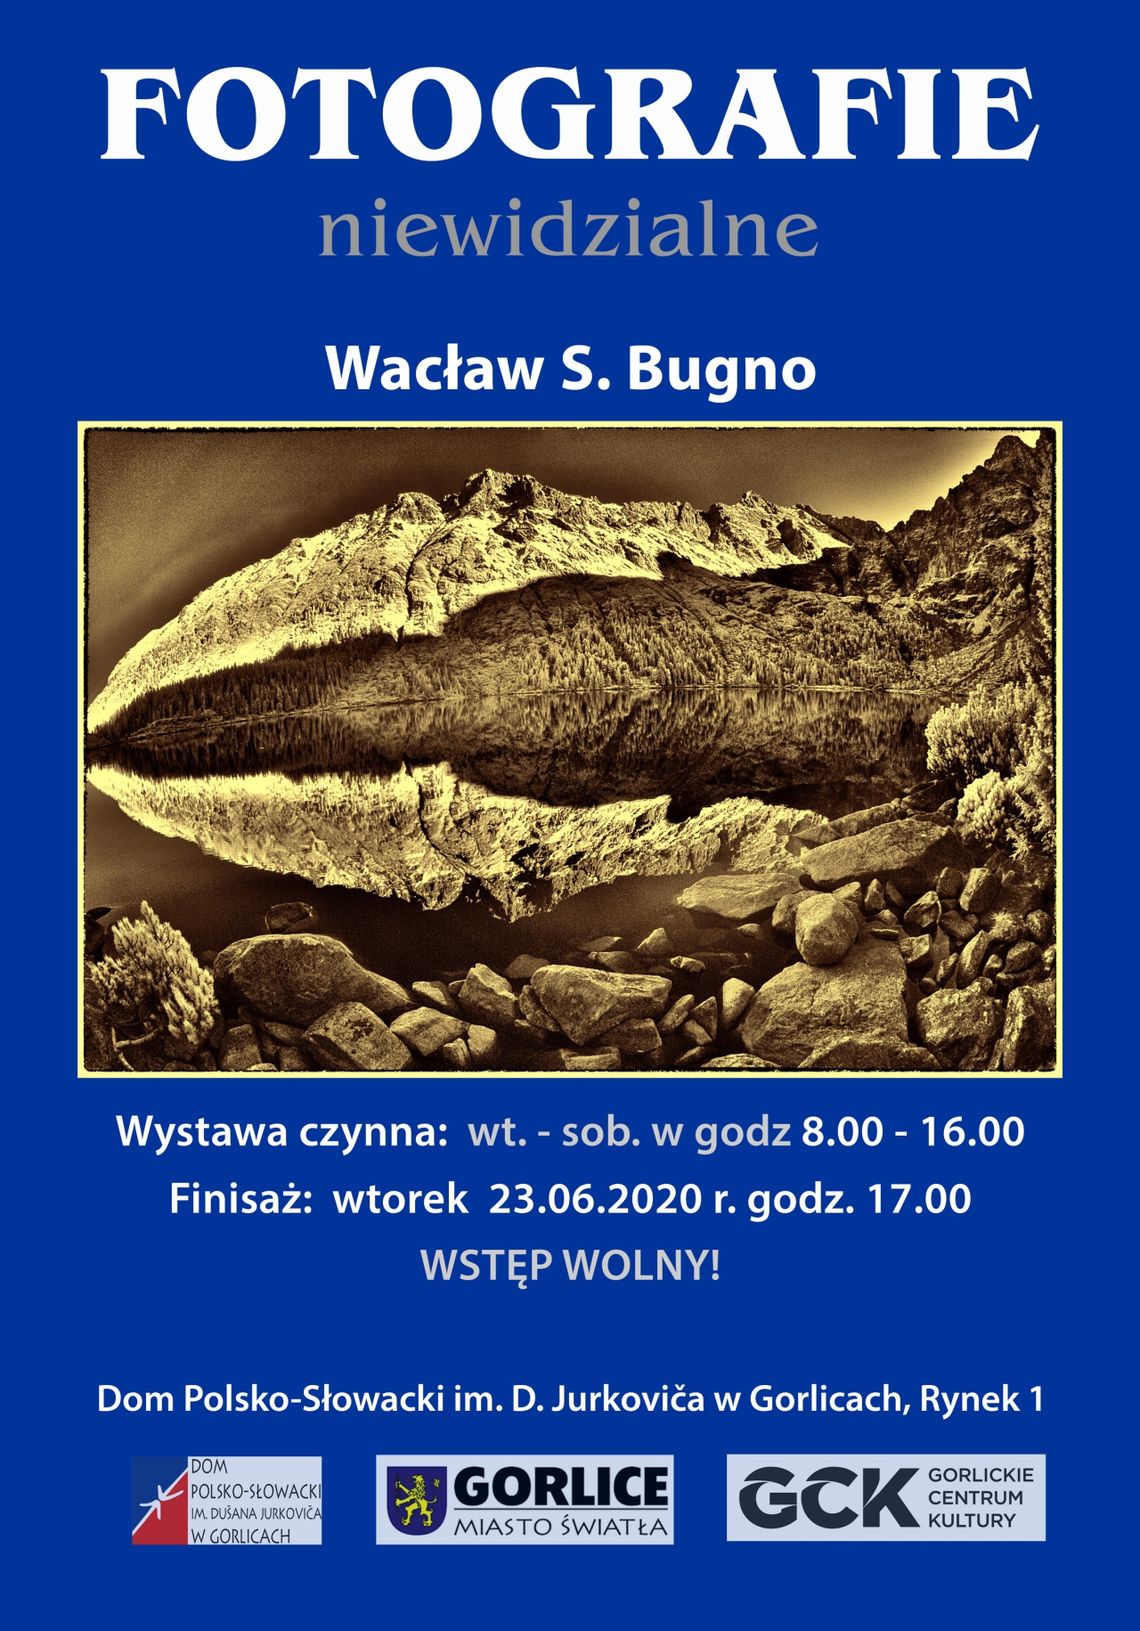 Wacław S. Bugno  „Fotografie niewidzialne” 